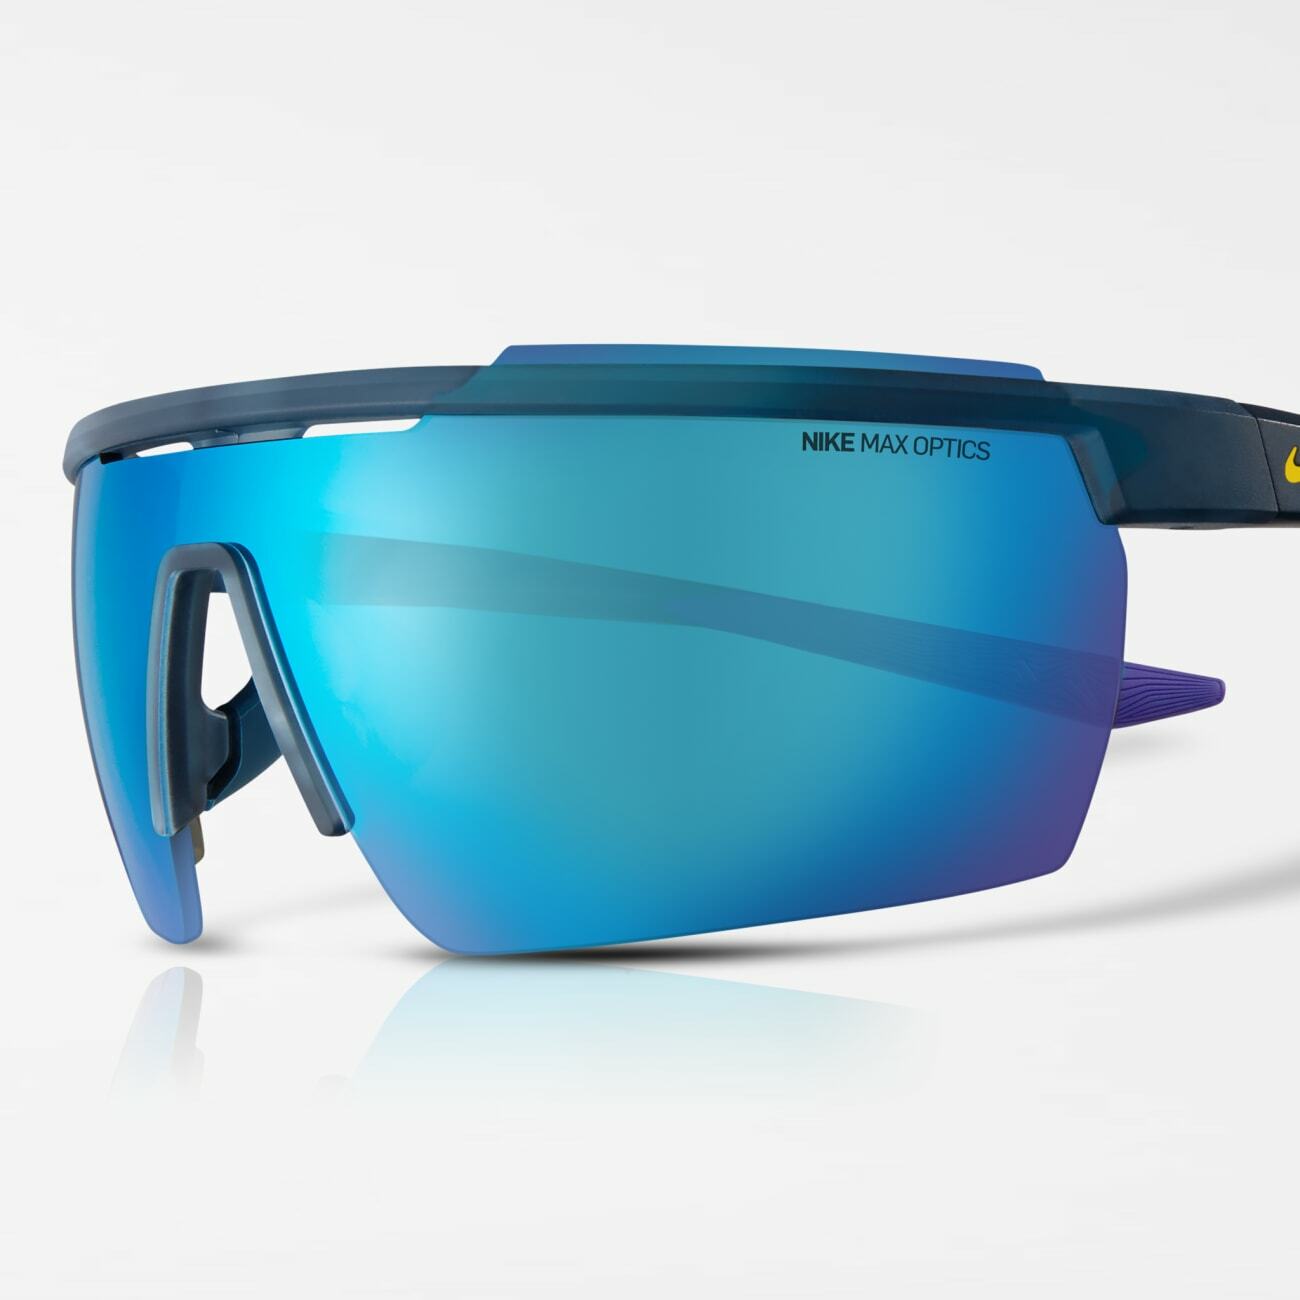 Cría Marketing de motores de búsqueda bandera nacional Running Sunglasses | Nike Vision